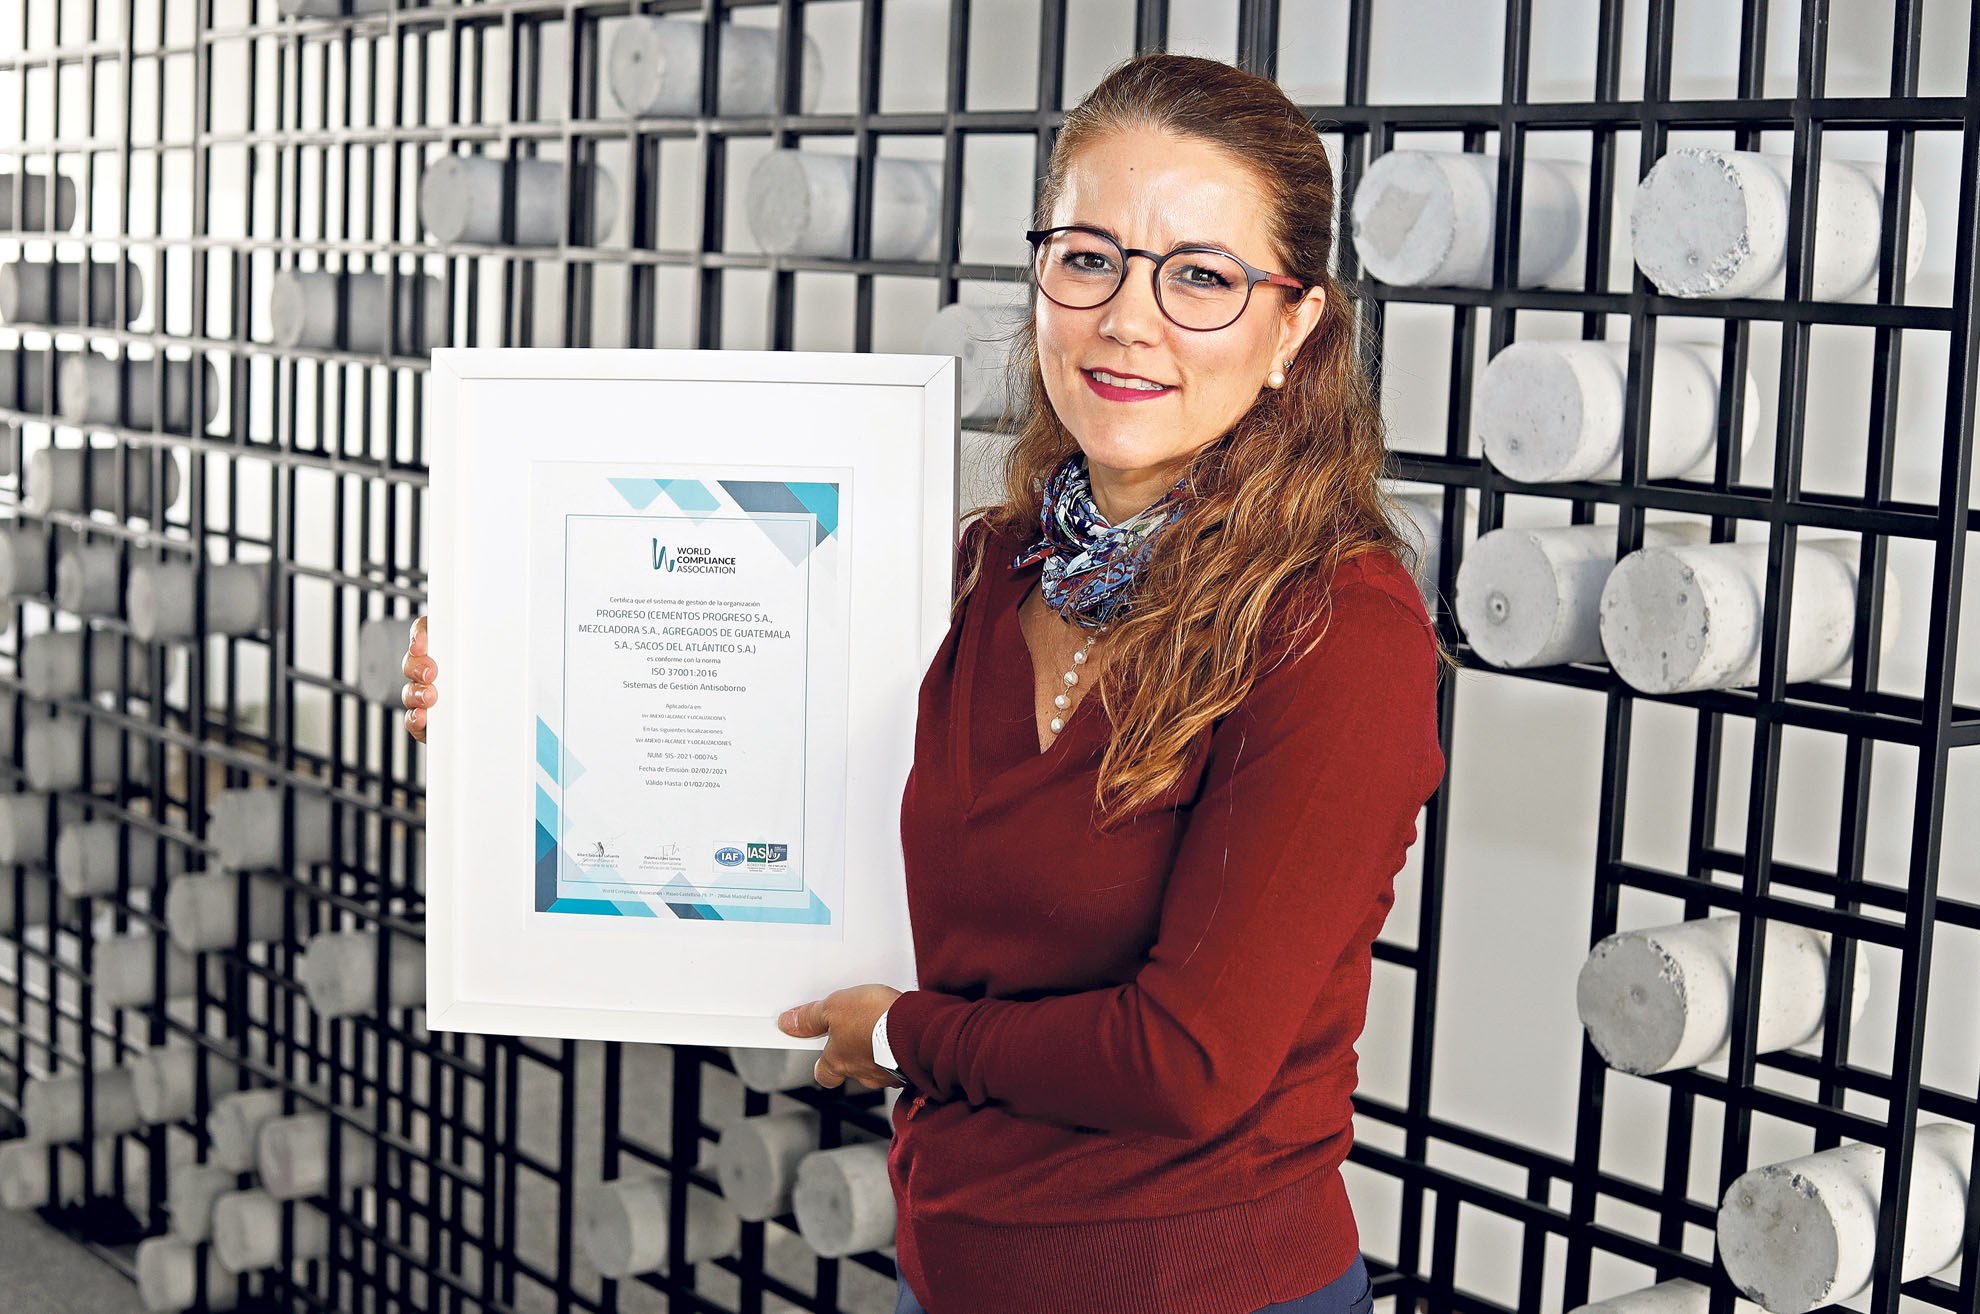 Christie Ippisch, oficial de cumplimiento de Progreso, sostiene el diploma de certificación entregado por la World Compliance Association (WCA) Capítulo Guatemala, en su cumplimiento del Sistema de Gestión Antisoborno.